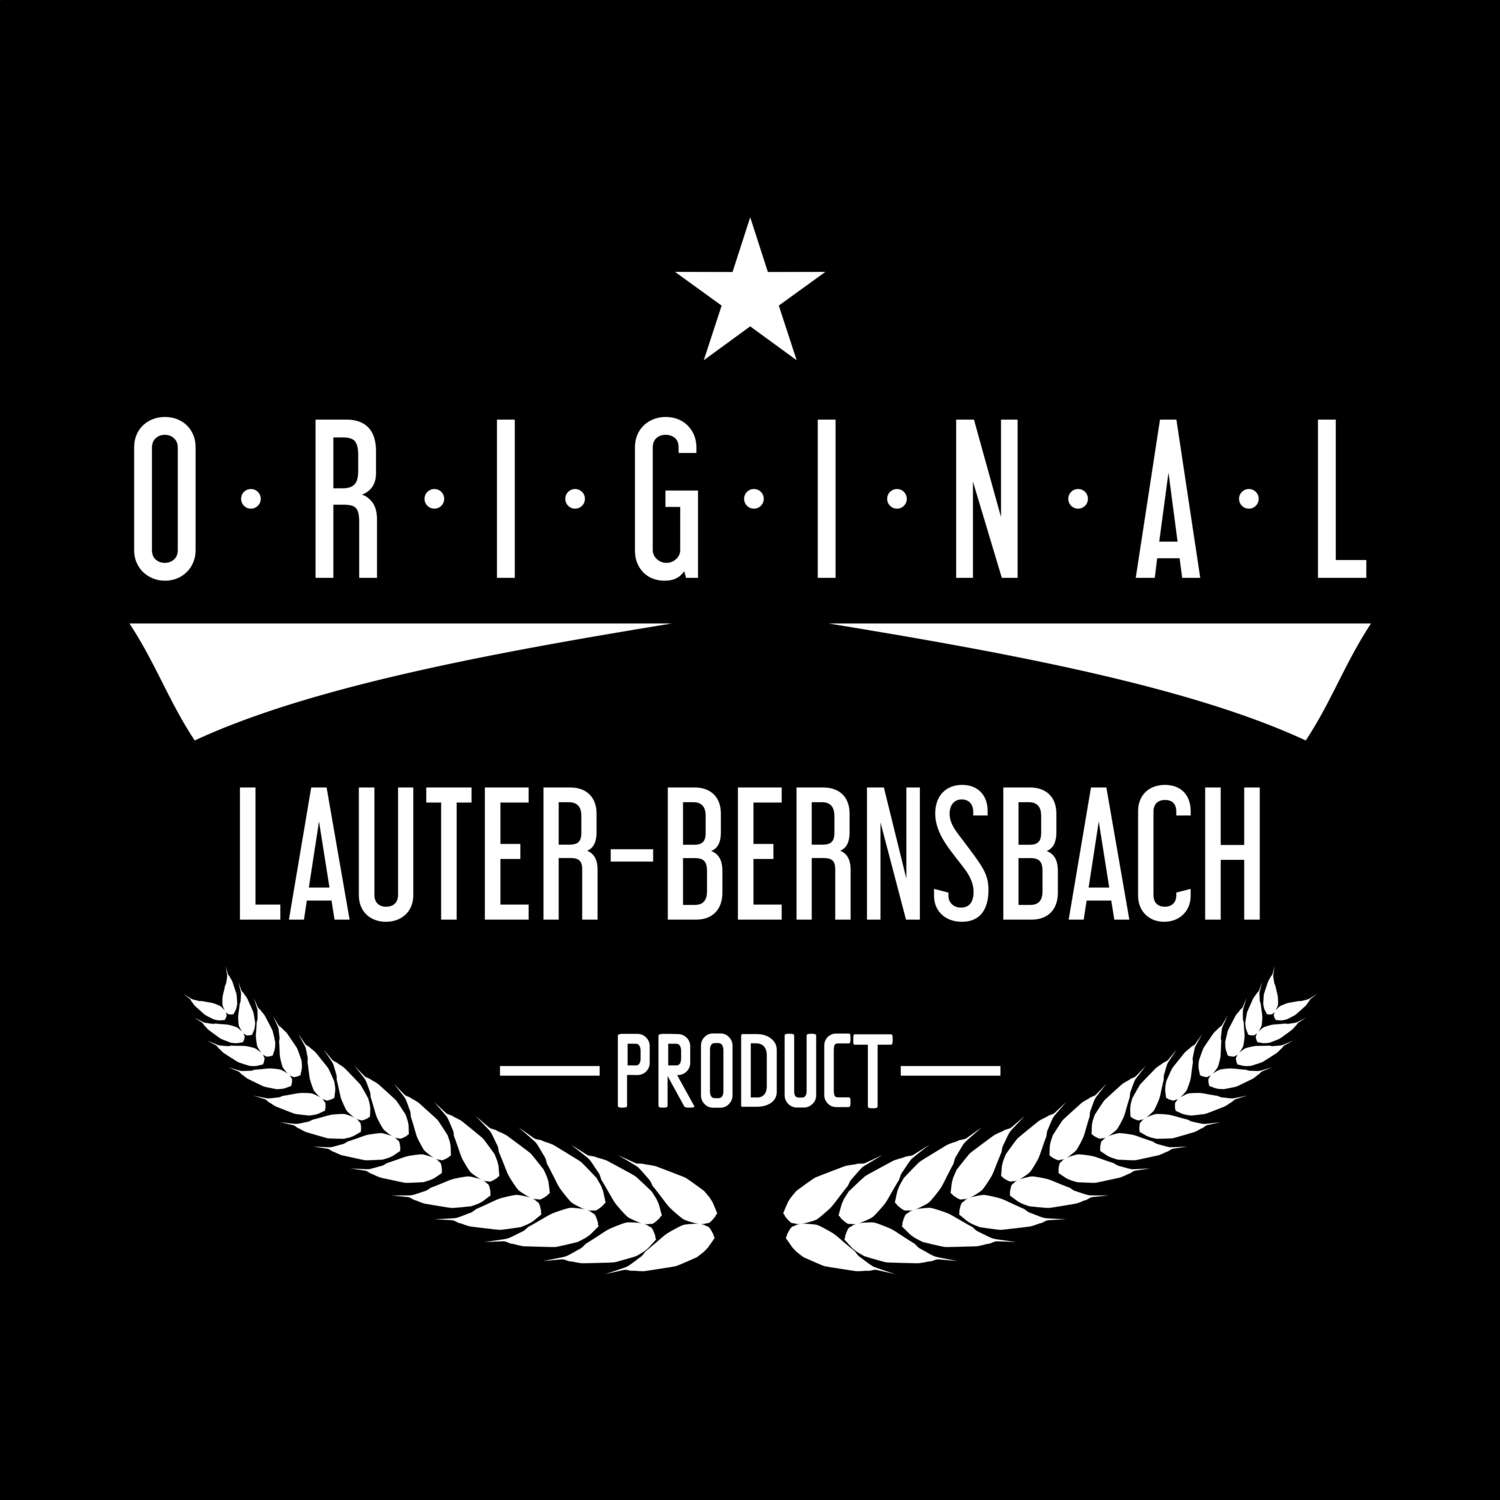 Lauter-Bernsbach T-Shirt »Original Product«